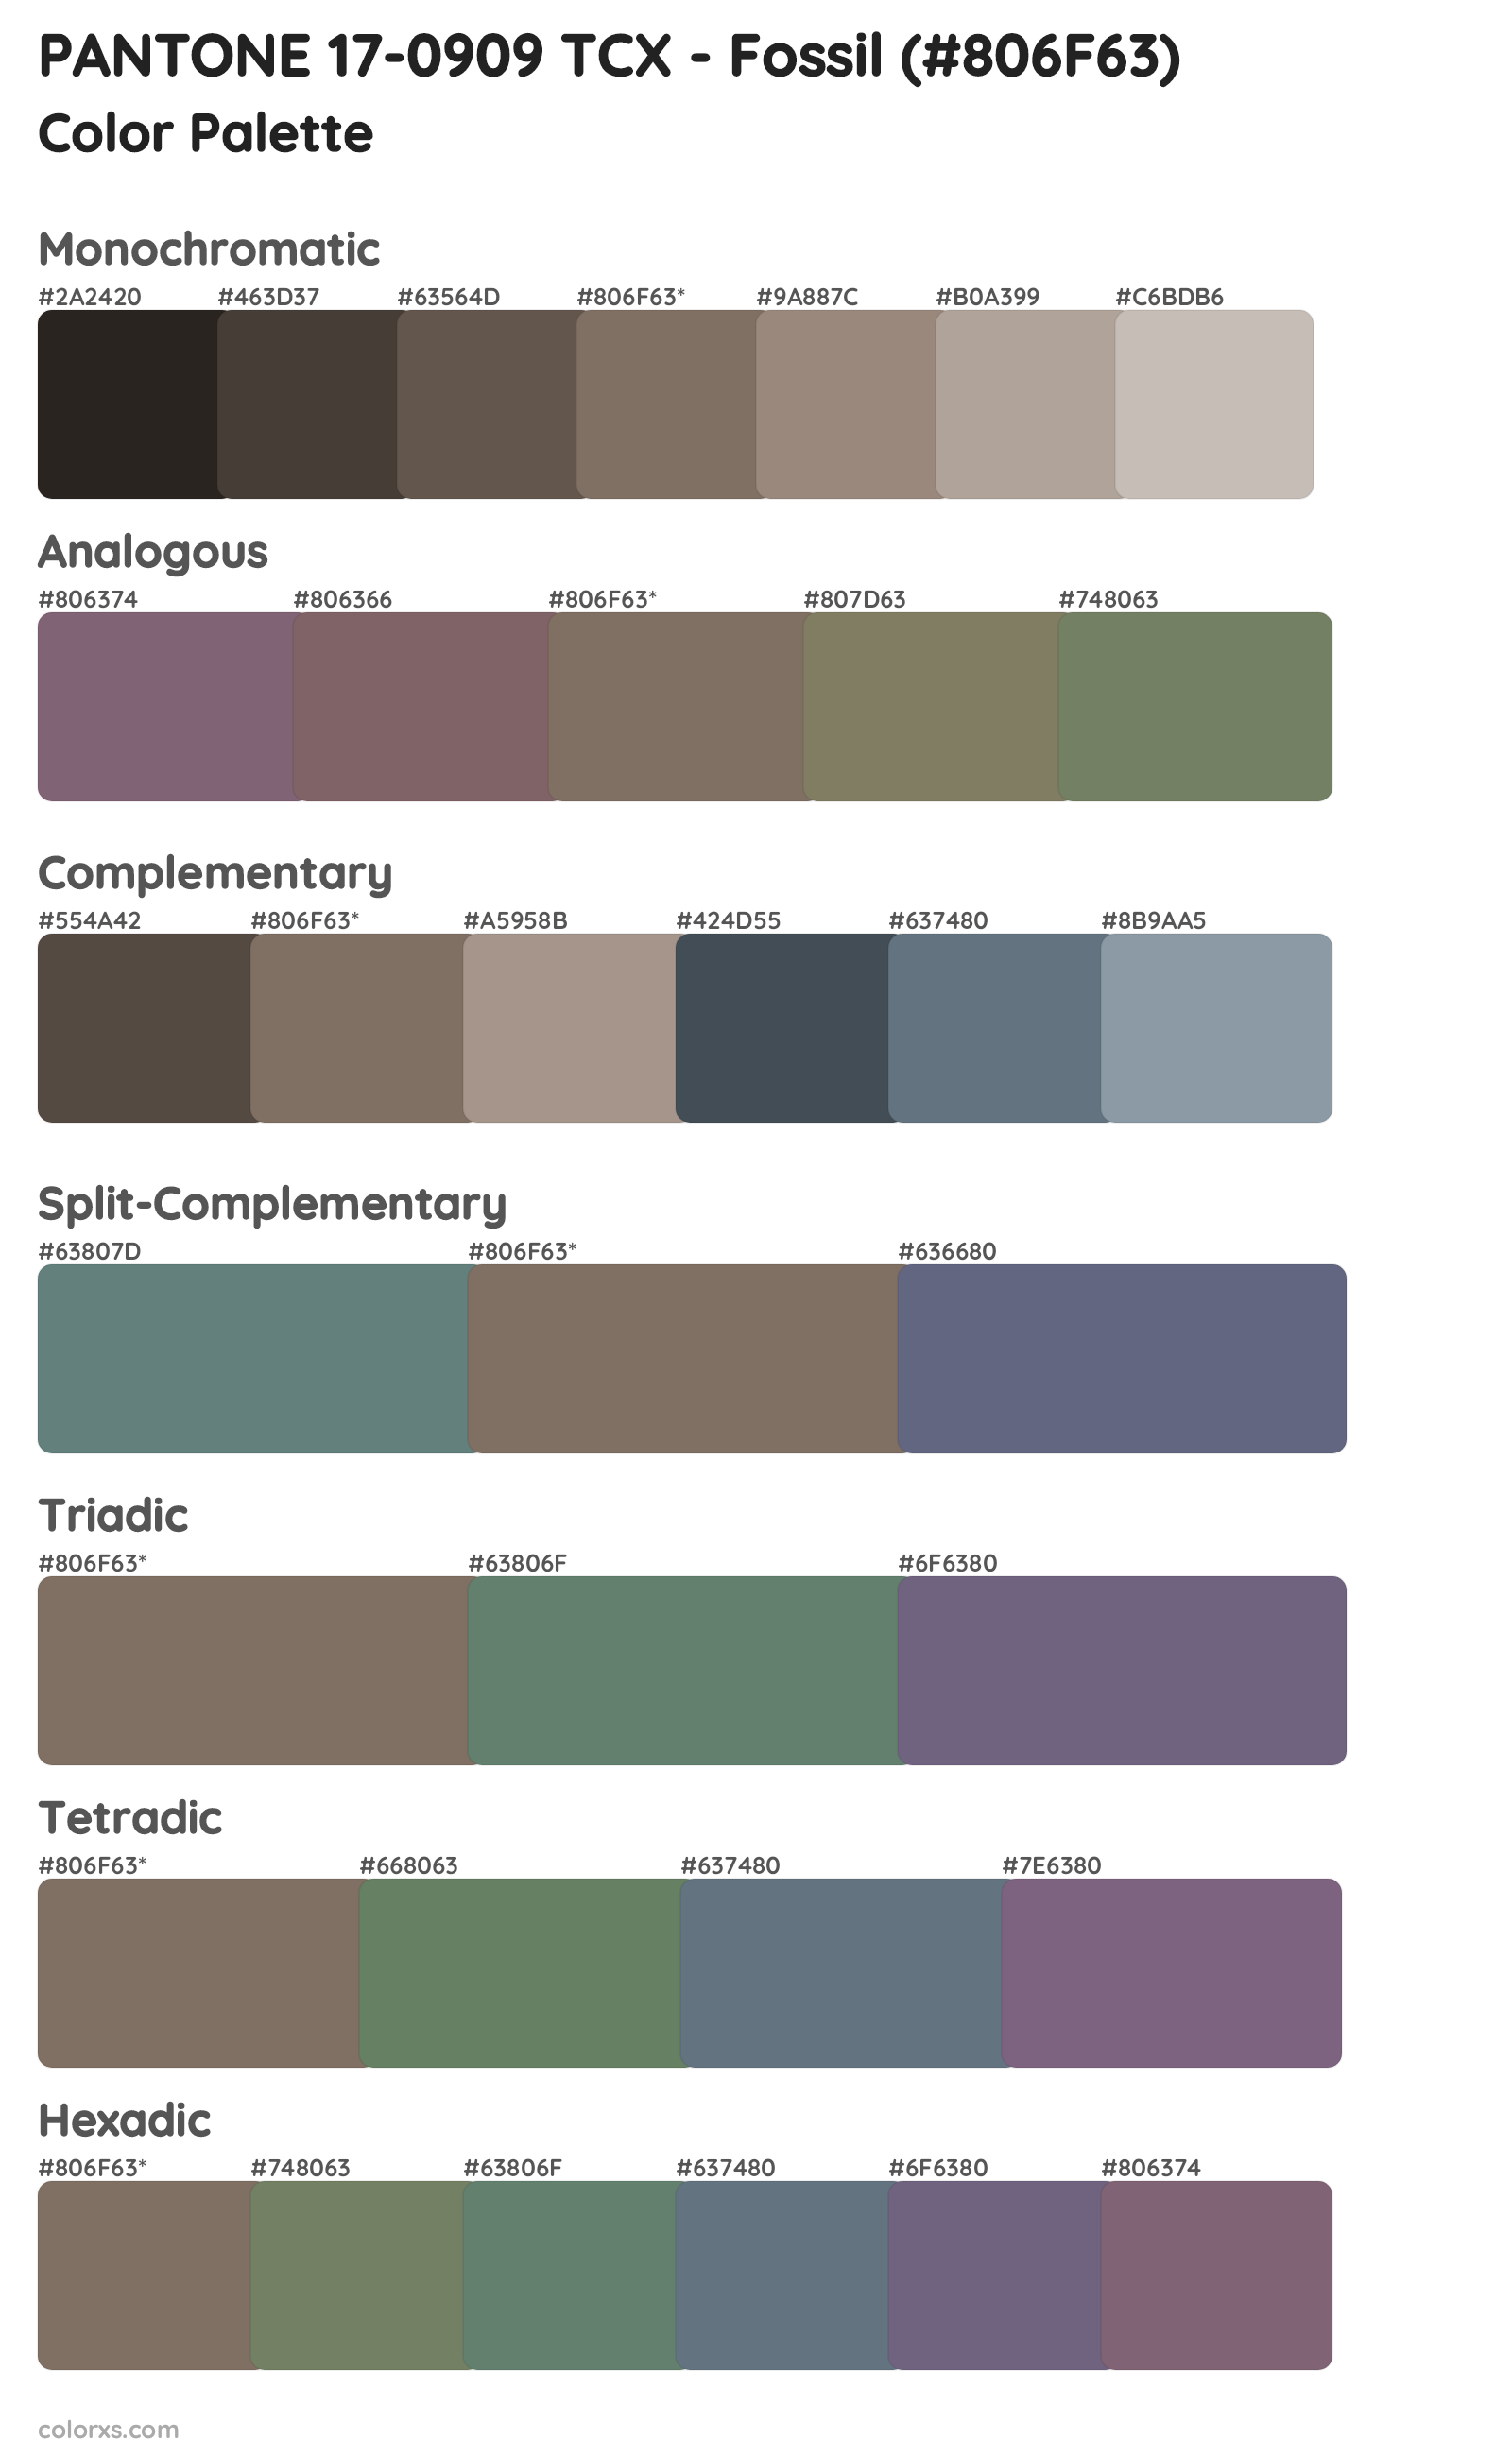 PANTONE 17-0909 TCX - Fossil Color Scheme Palettes